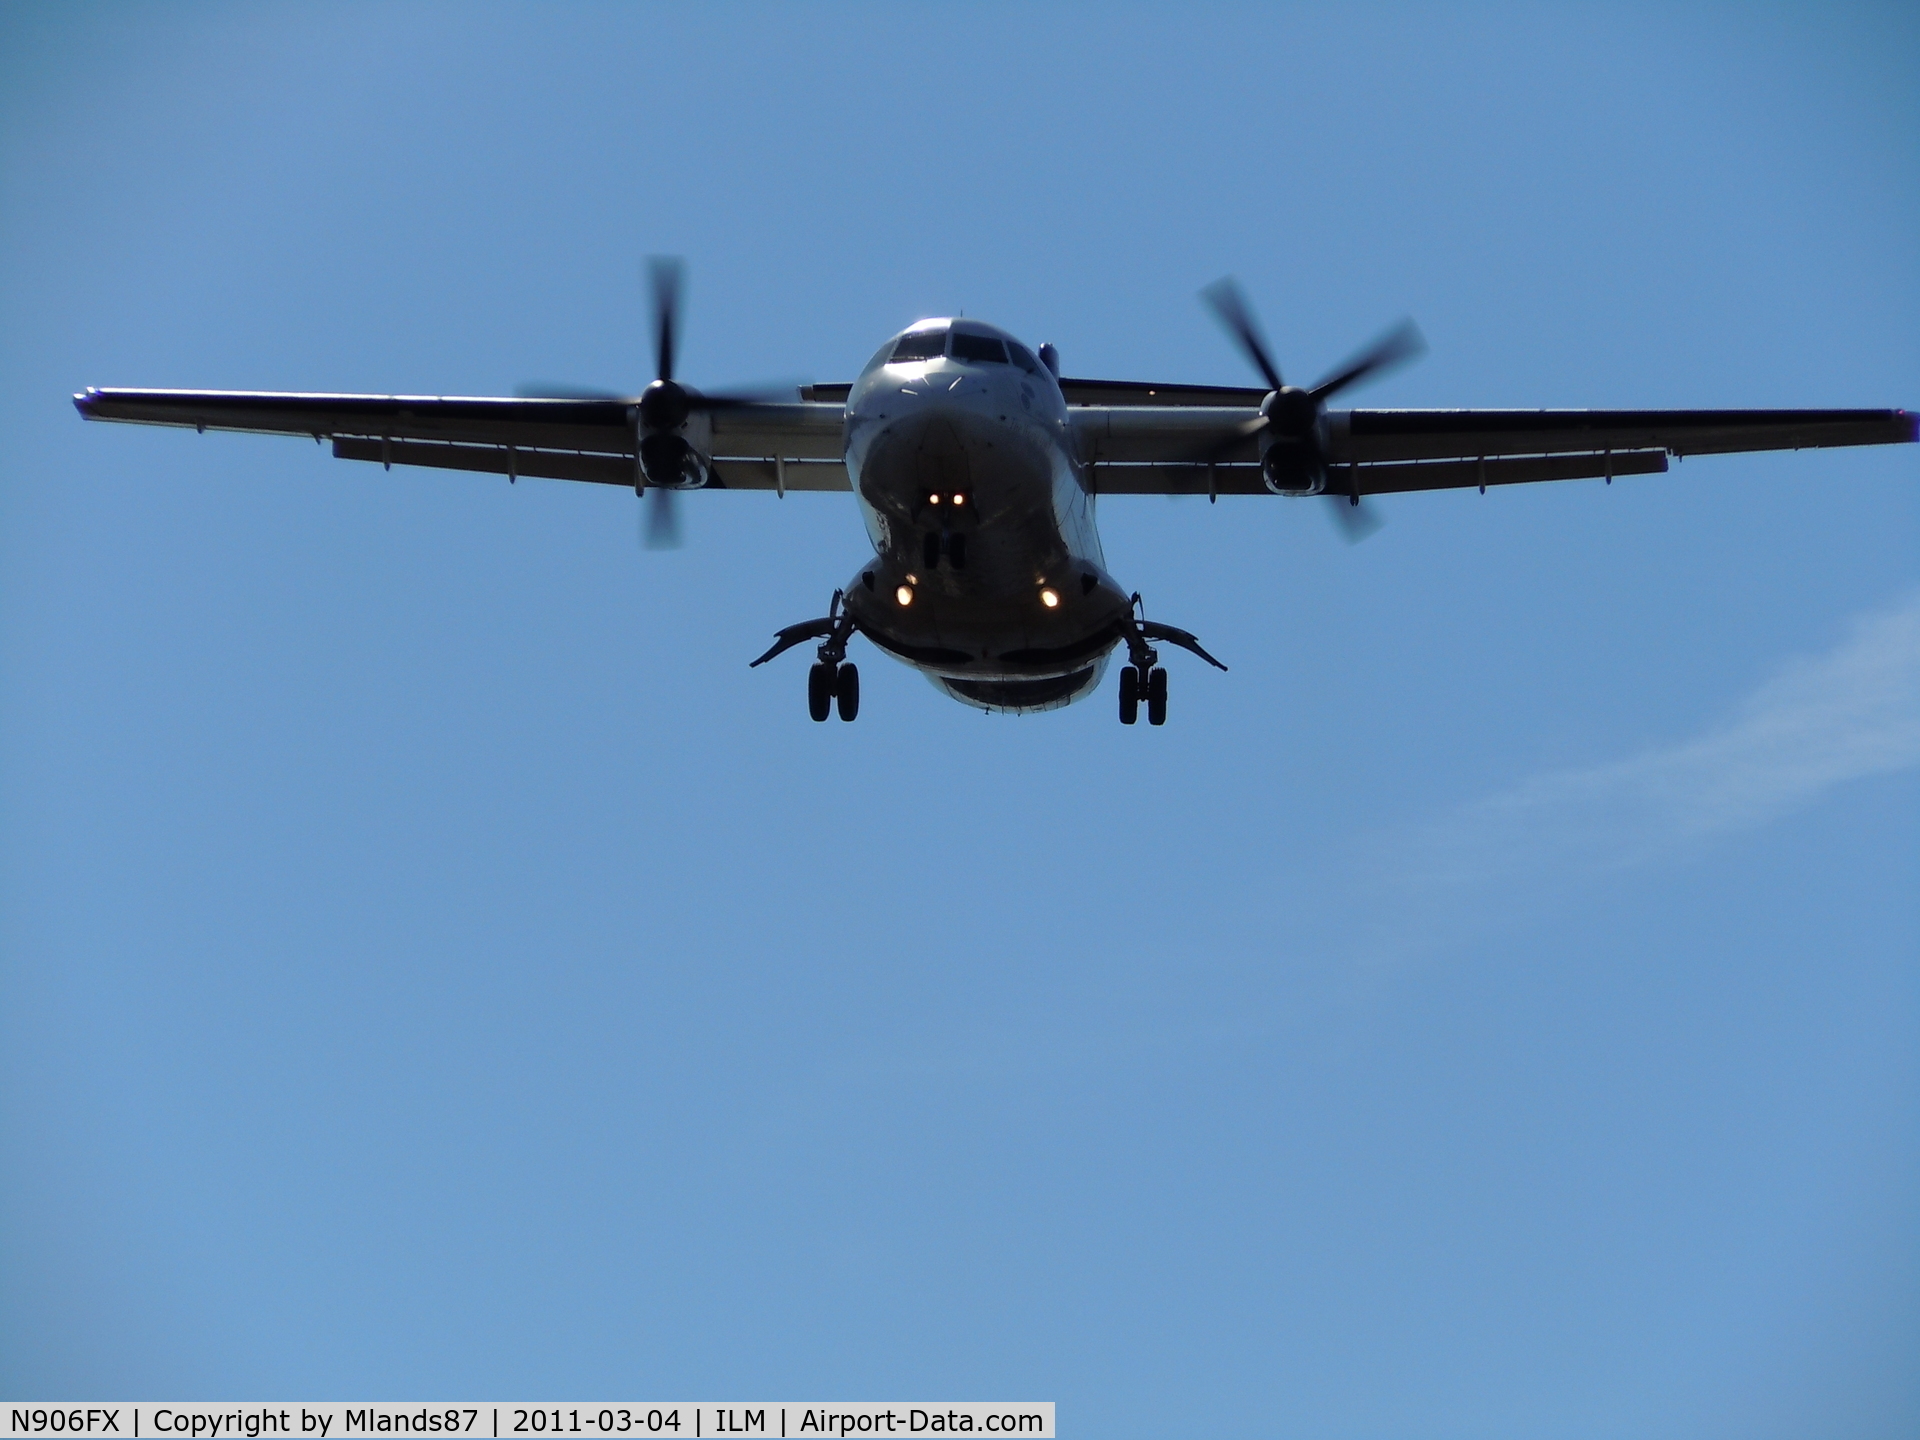 N906FX, 1991 ATR 42-320 C/N 280, Fed Ex feeder turbo prop on final RWY 06